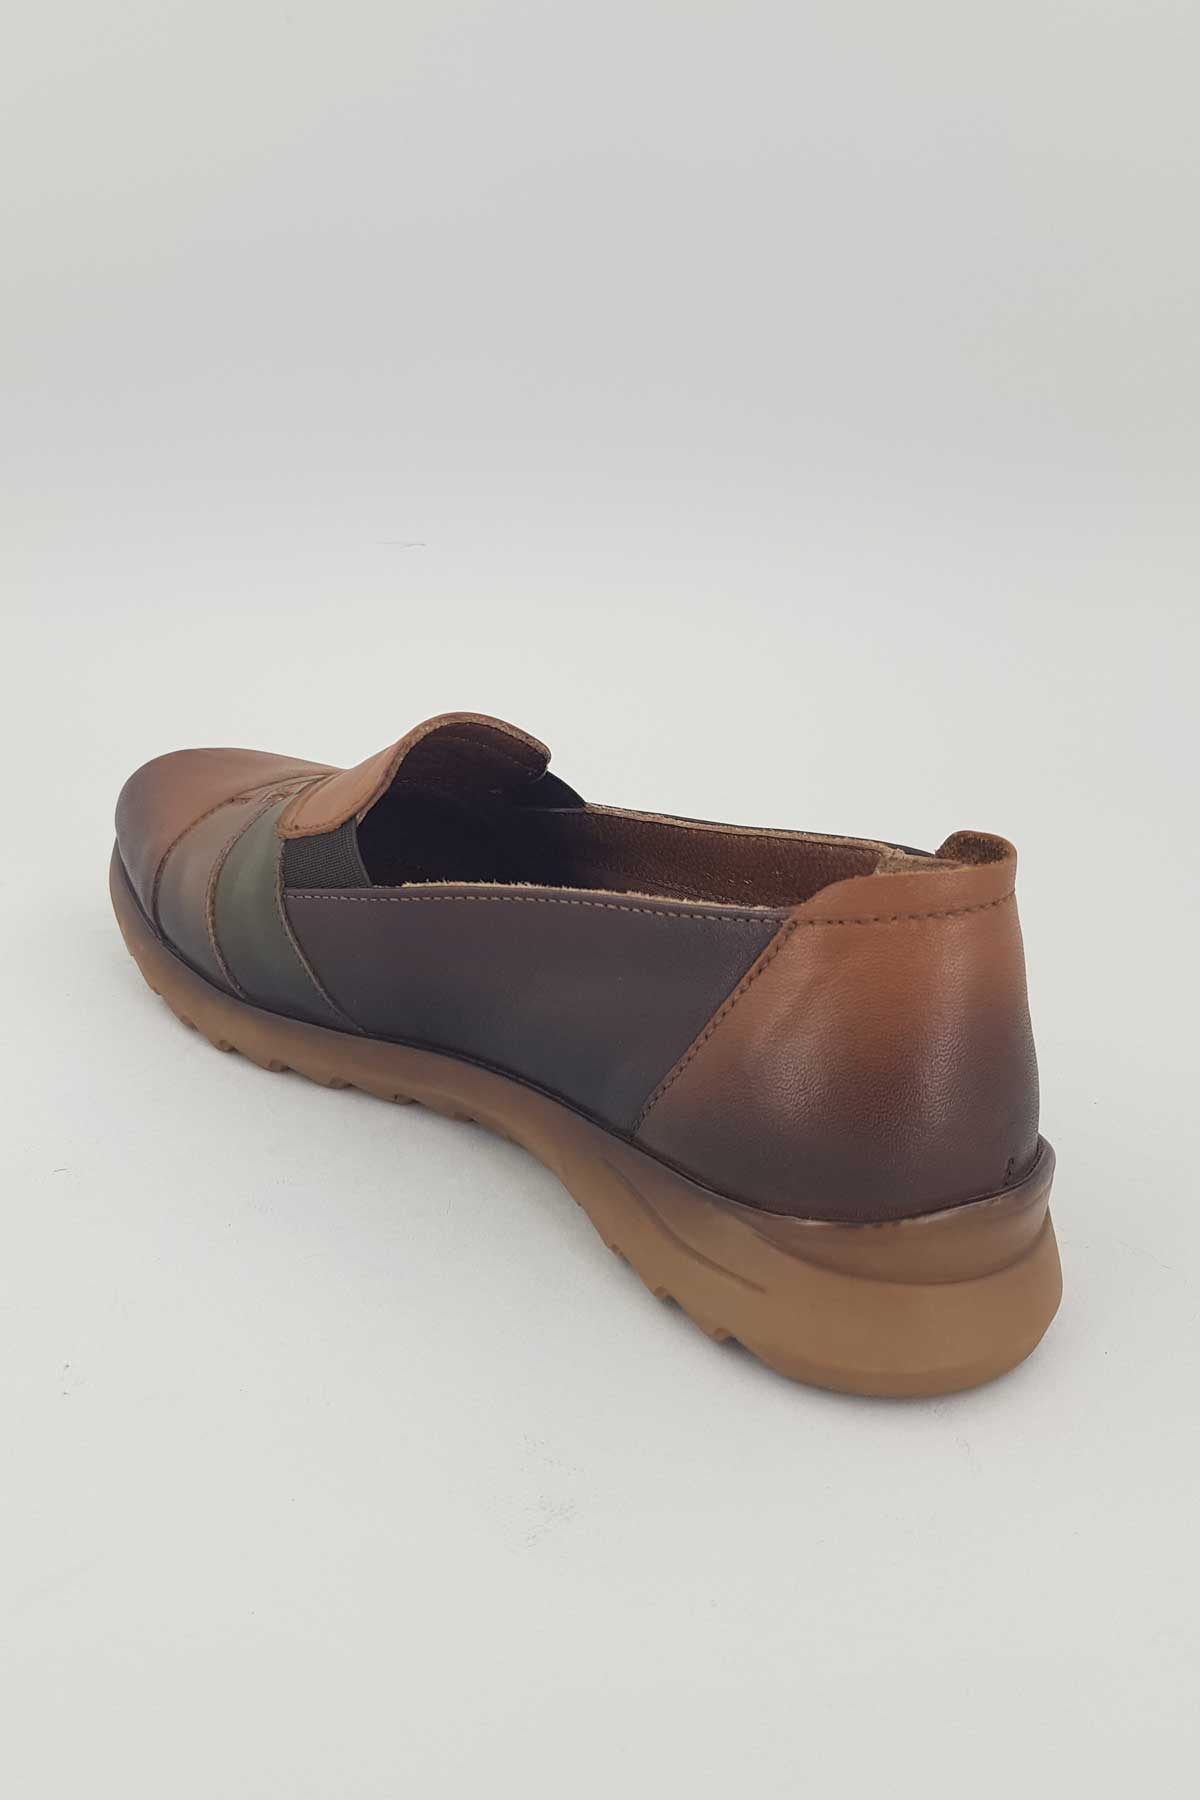 Kadın Comfort Deri Ayakkabı Taba 1813680K - Thumbnail